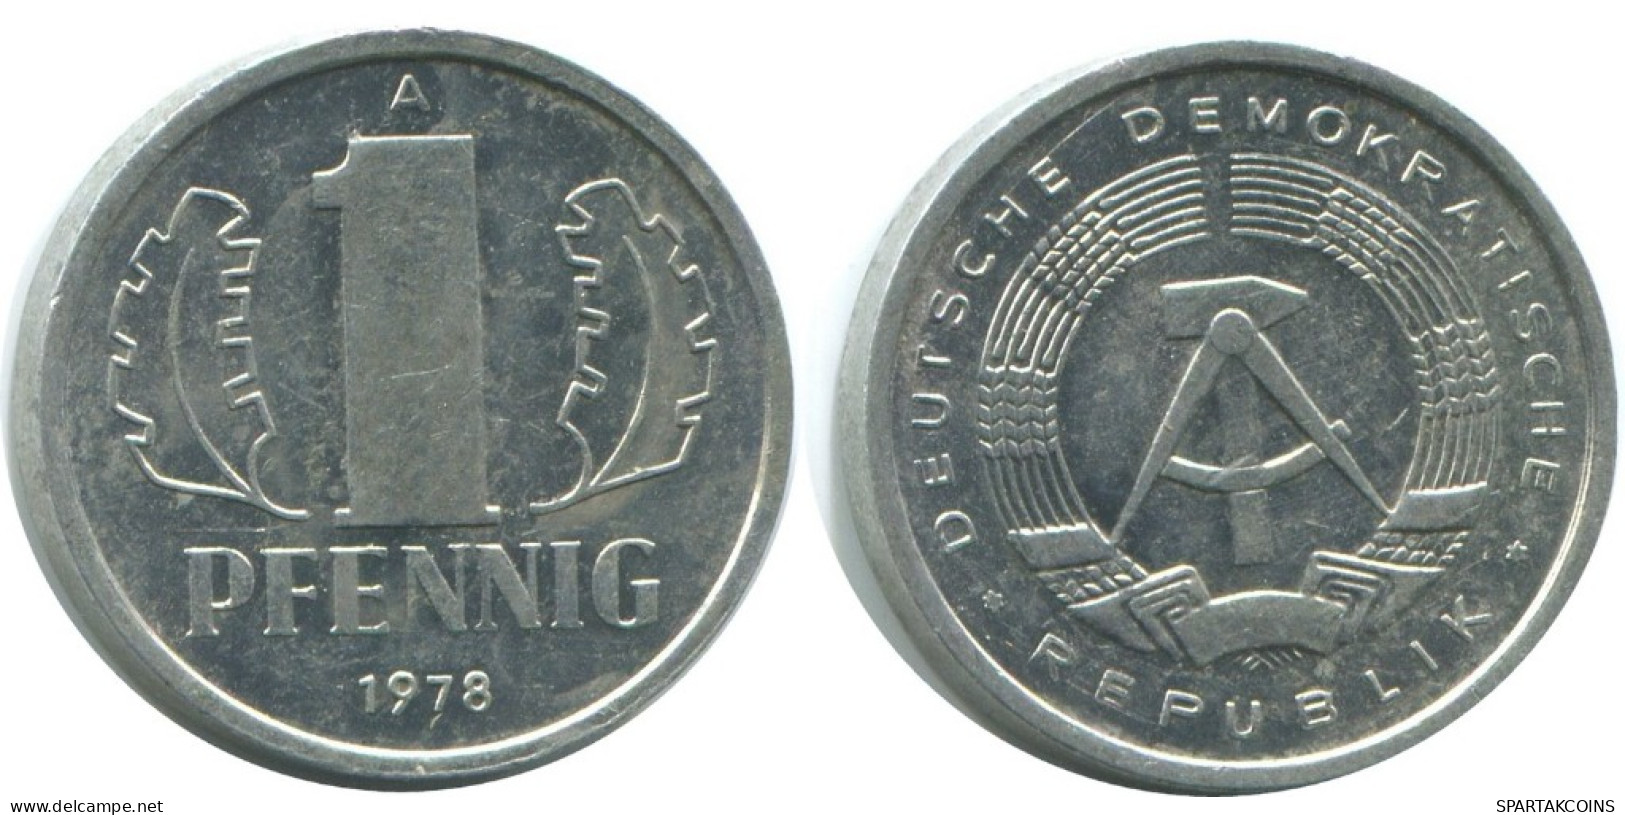 1 PFENNIG 1988 A DDR EAST GERMANY Coin #AE070.U.A - 1 Pfennig